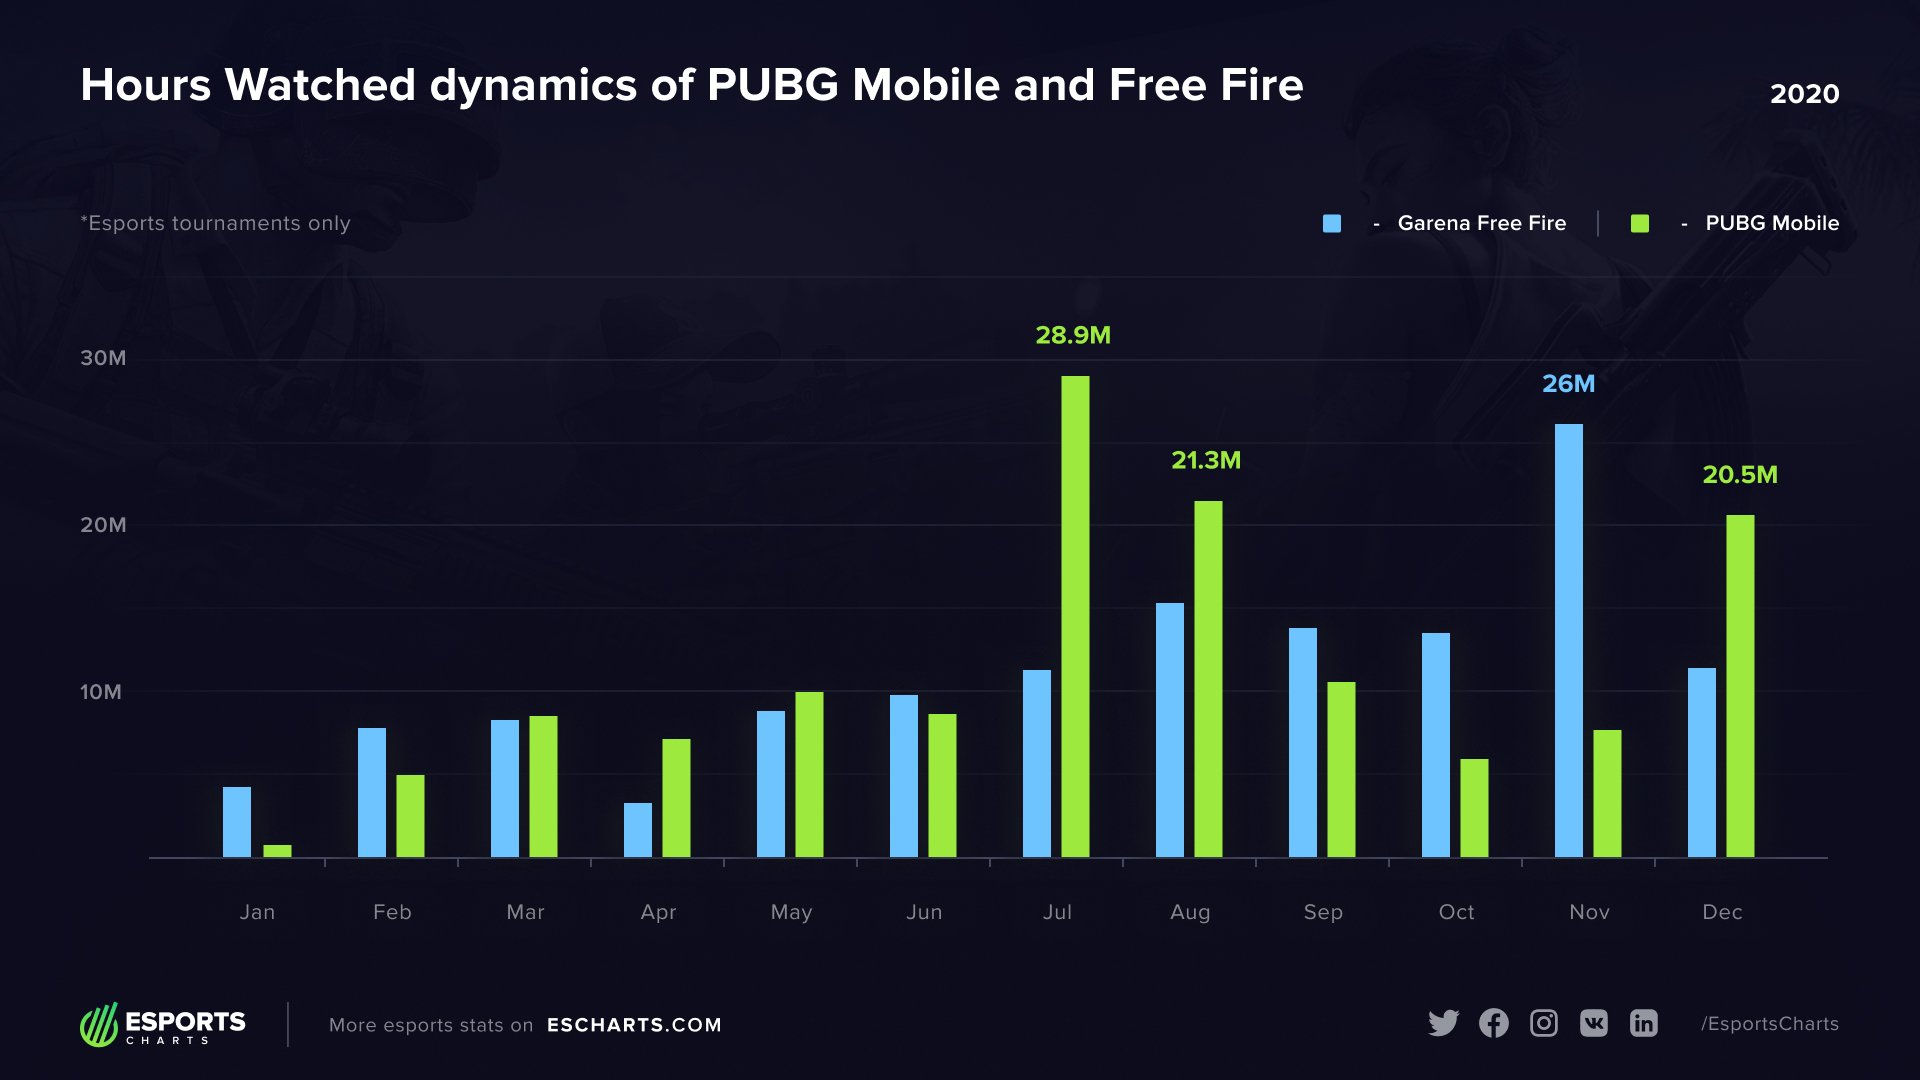 PUBG Mobile Garena Free Fire chart